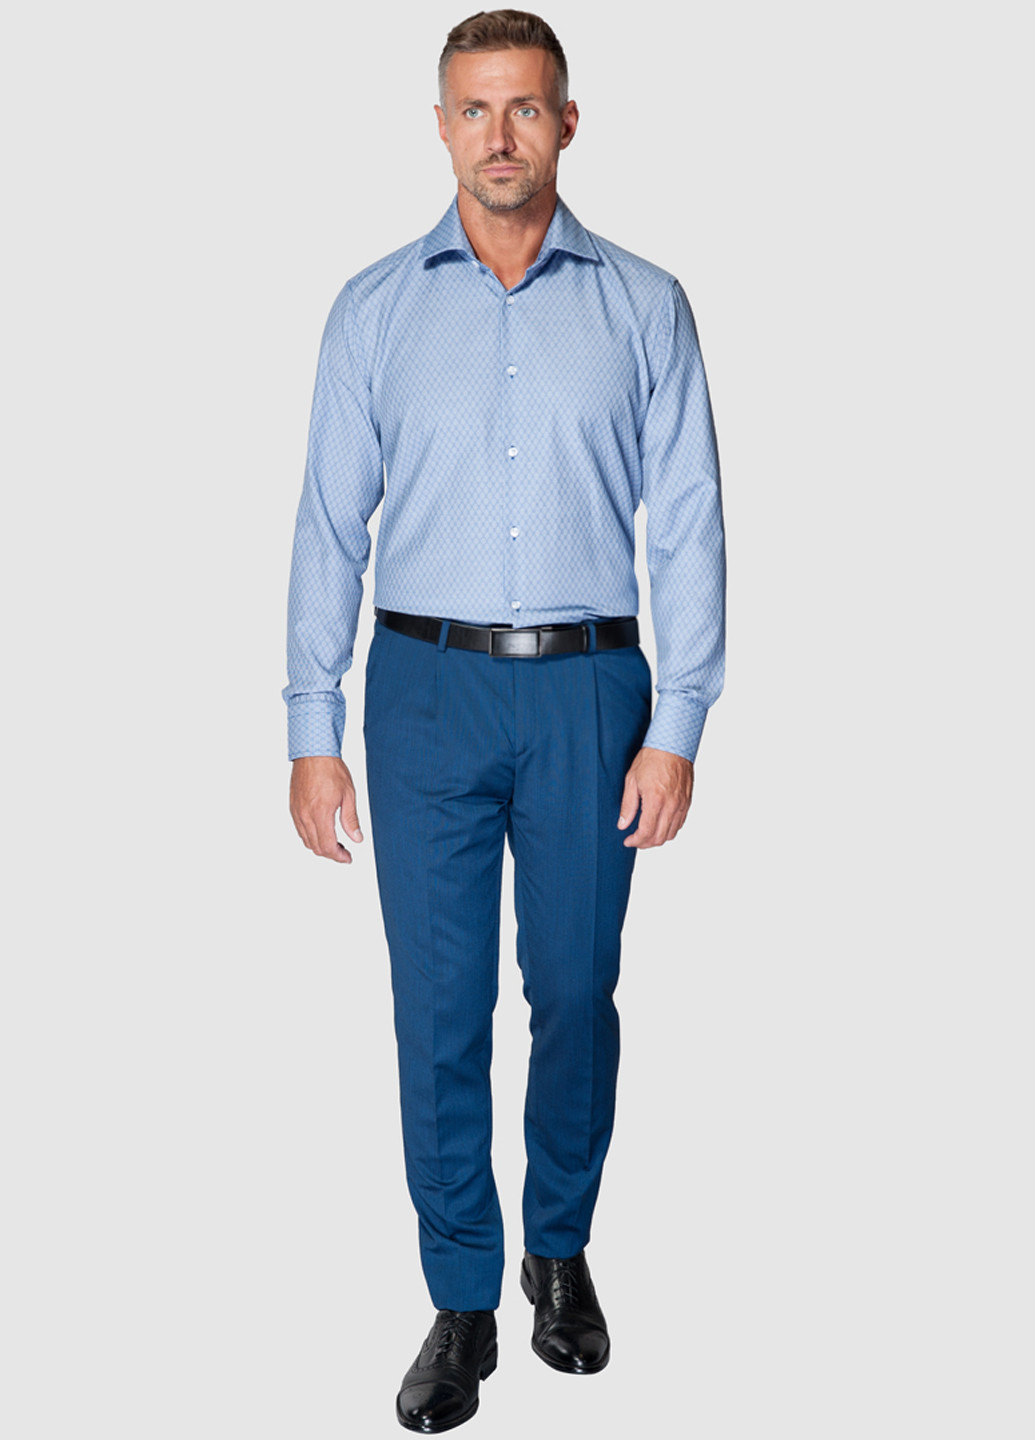 Голубой классическая рубашка Arber с длинным рукавом